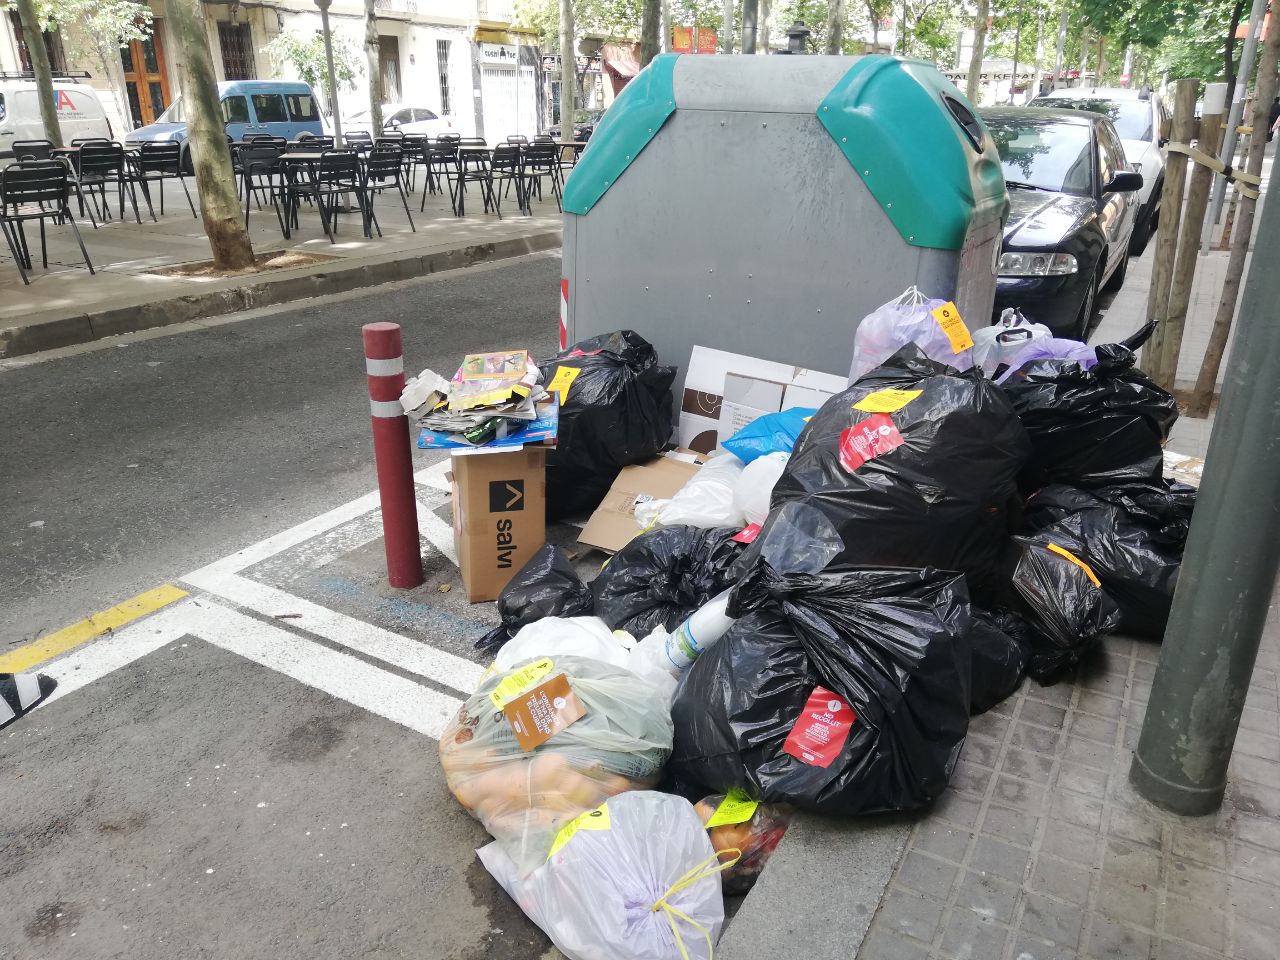 El viernes, manifestación contra la nueva recogida de residuos en Sant Andreu